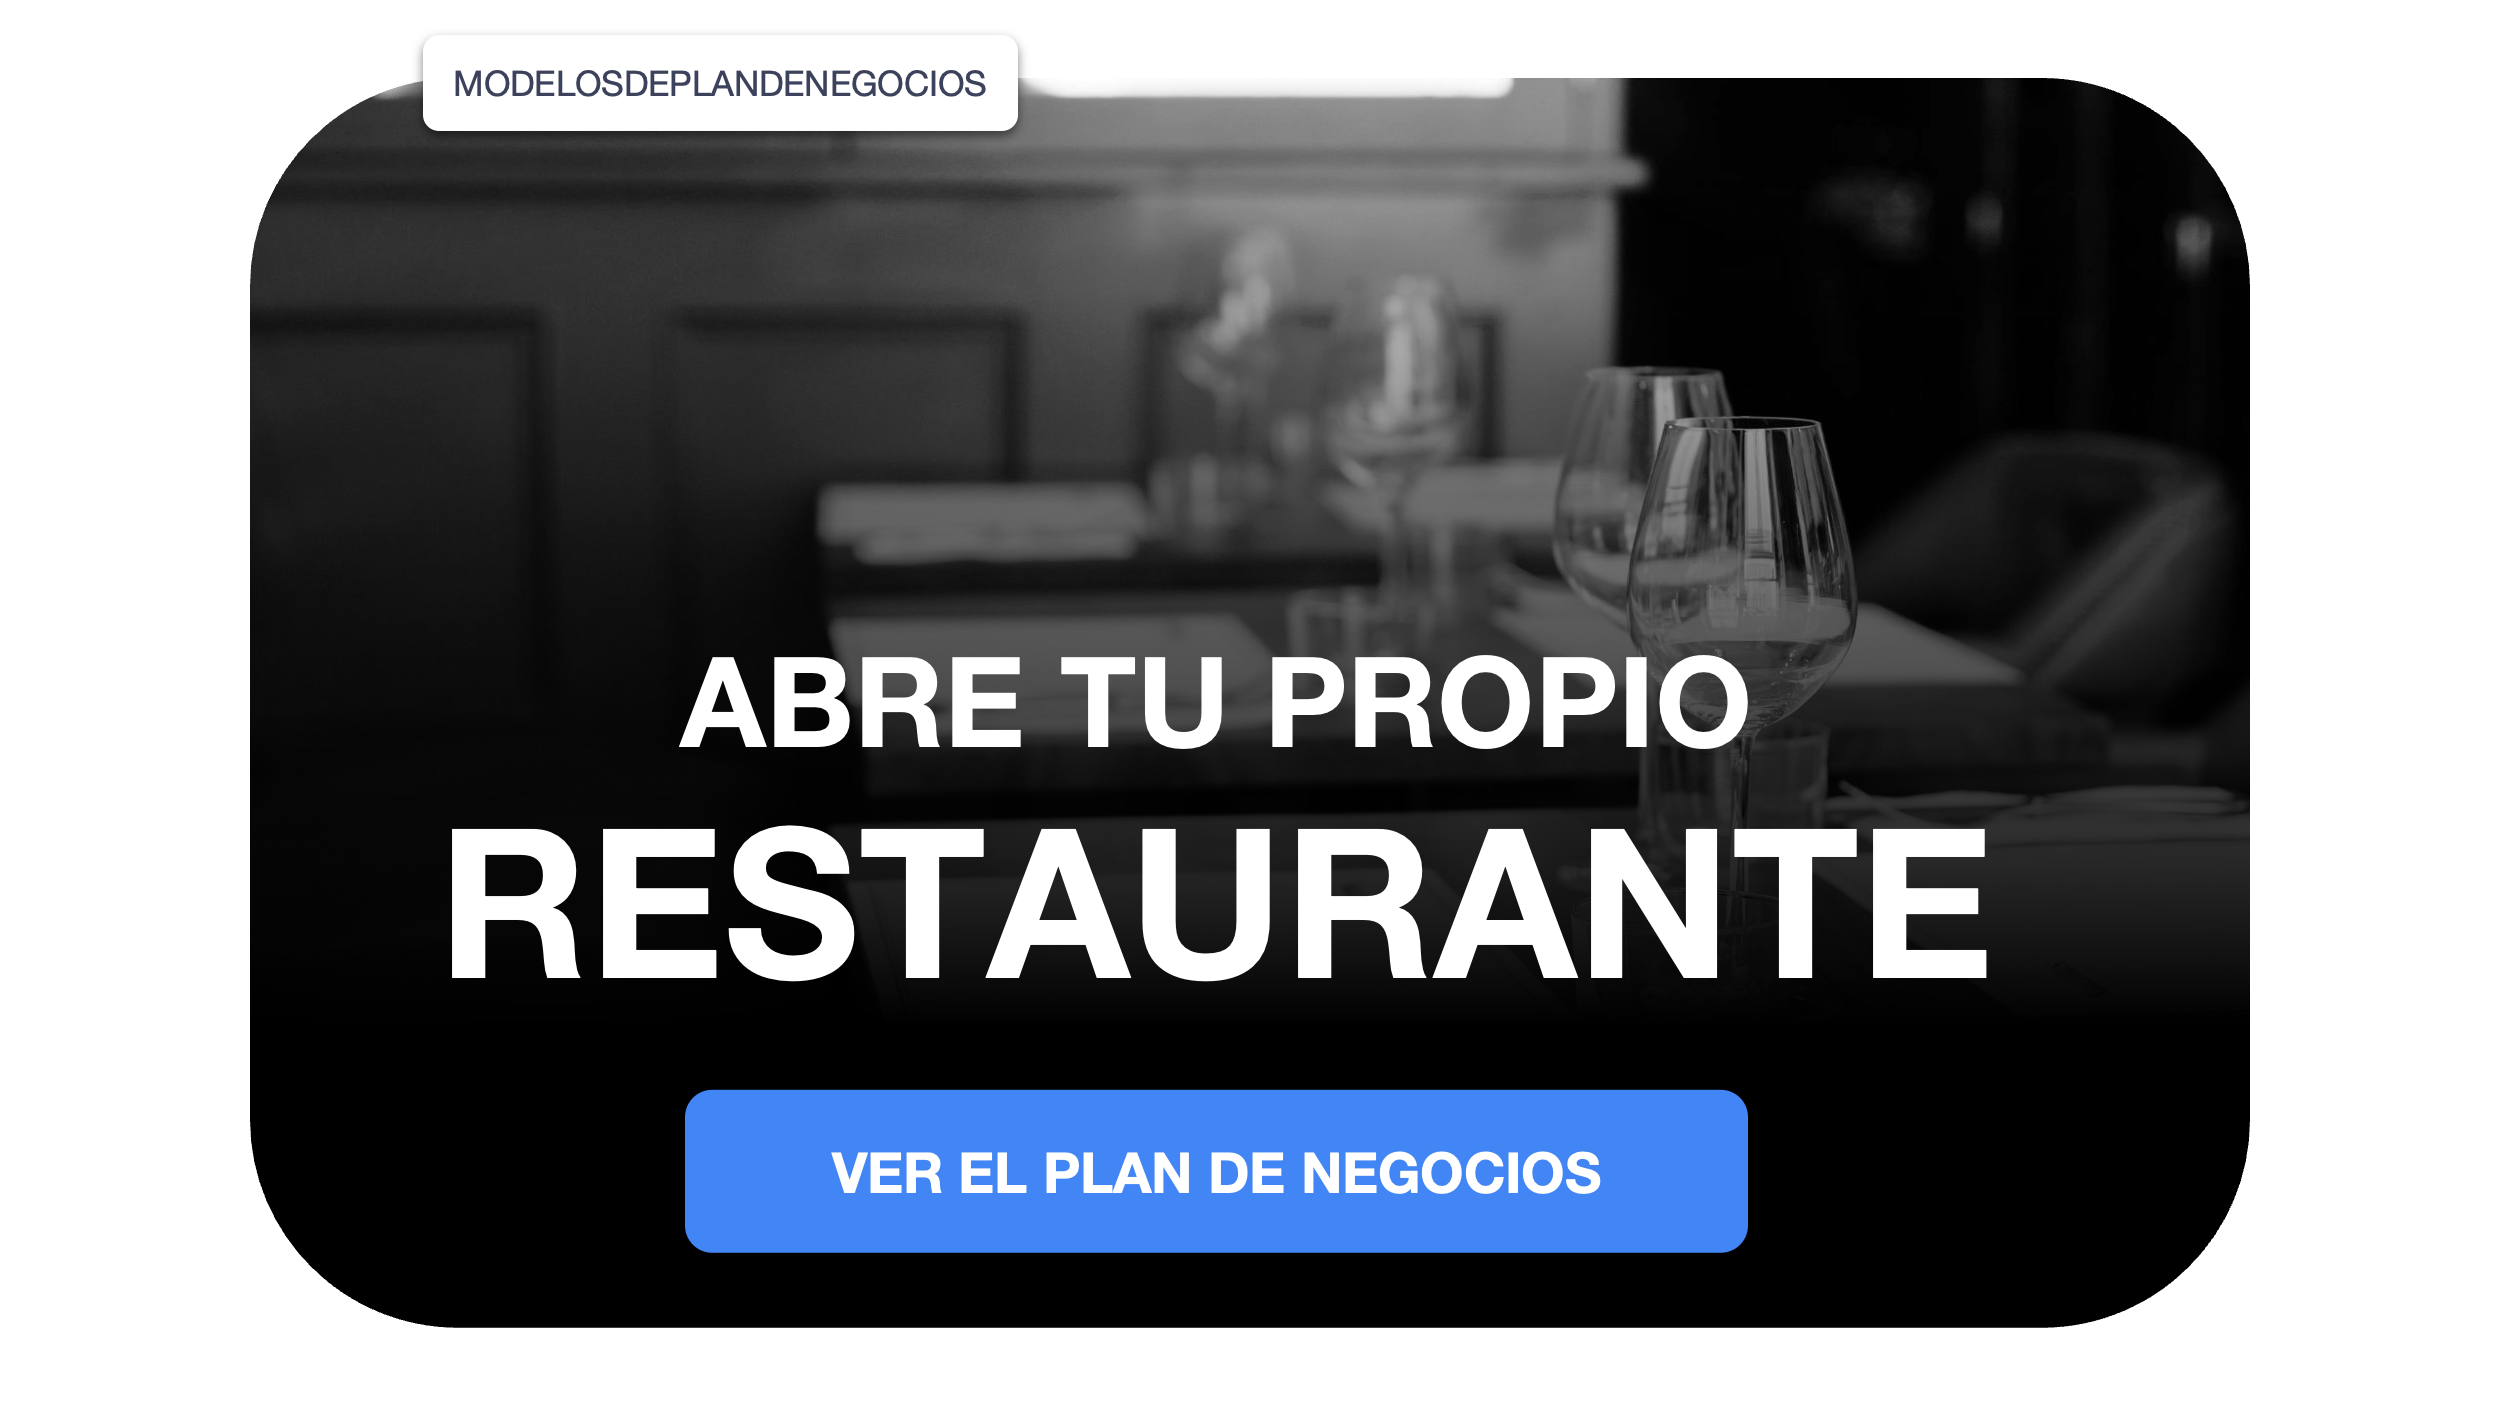 Los restaurantes de comida americana son los más digitalizados en España -  Restauración News